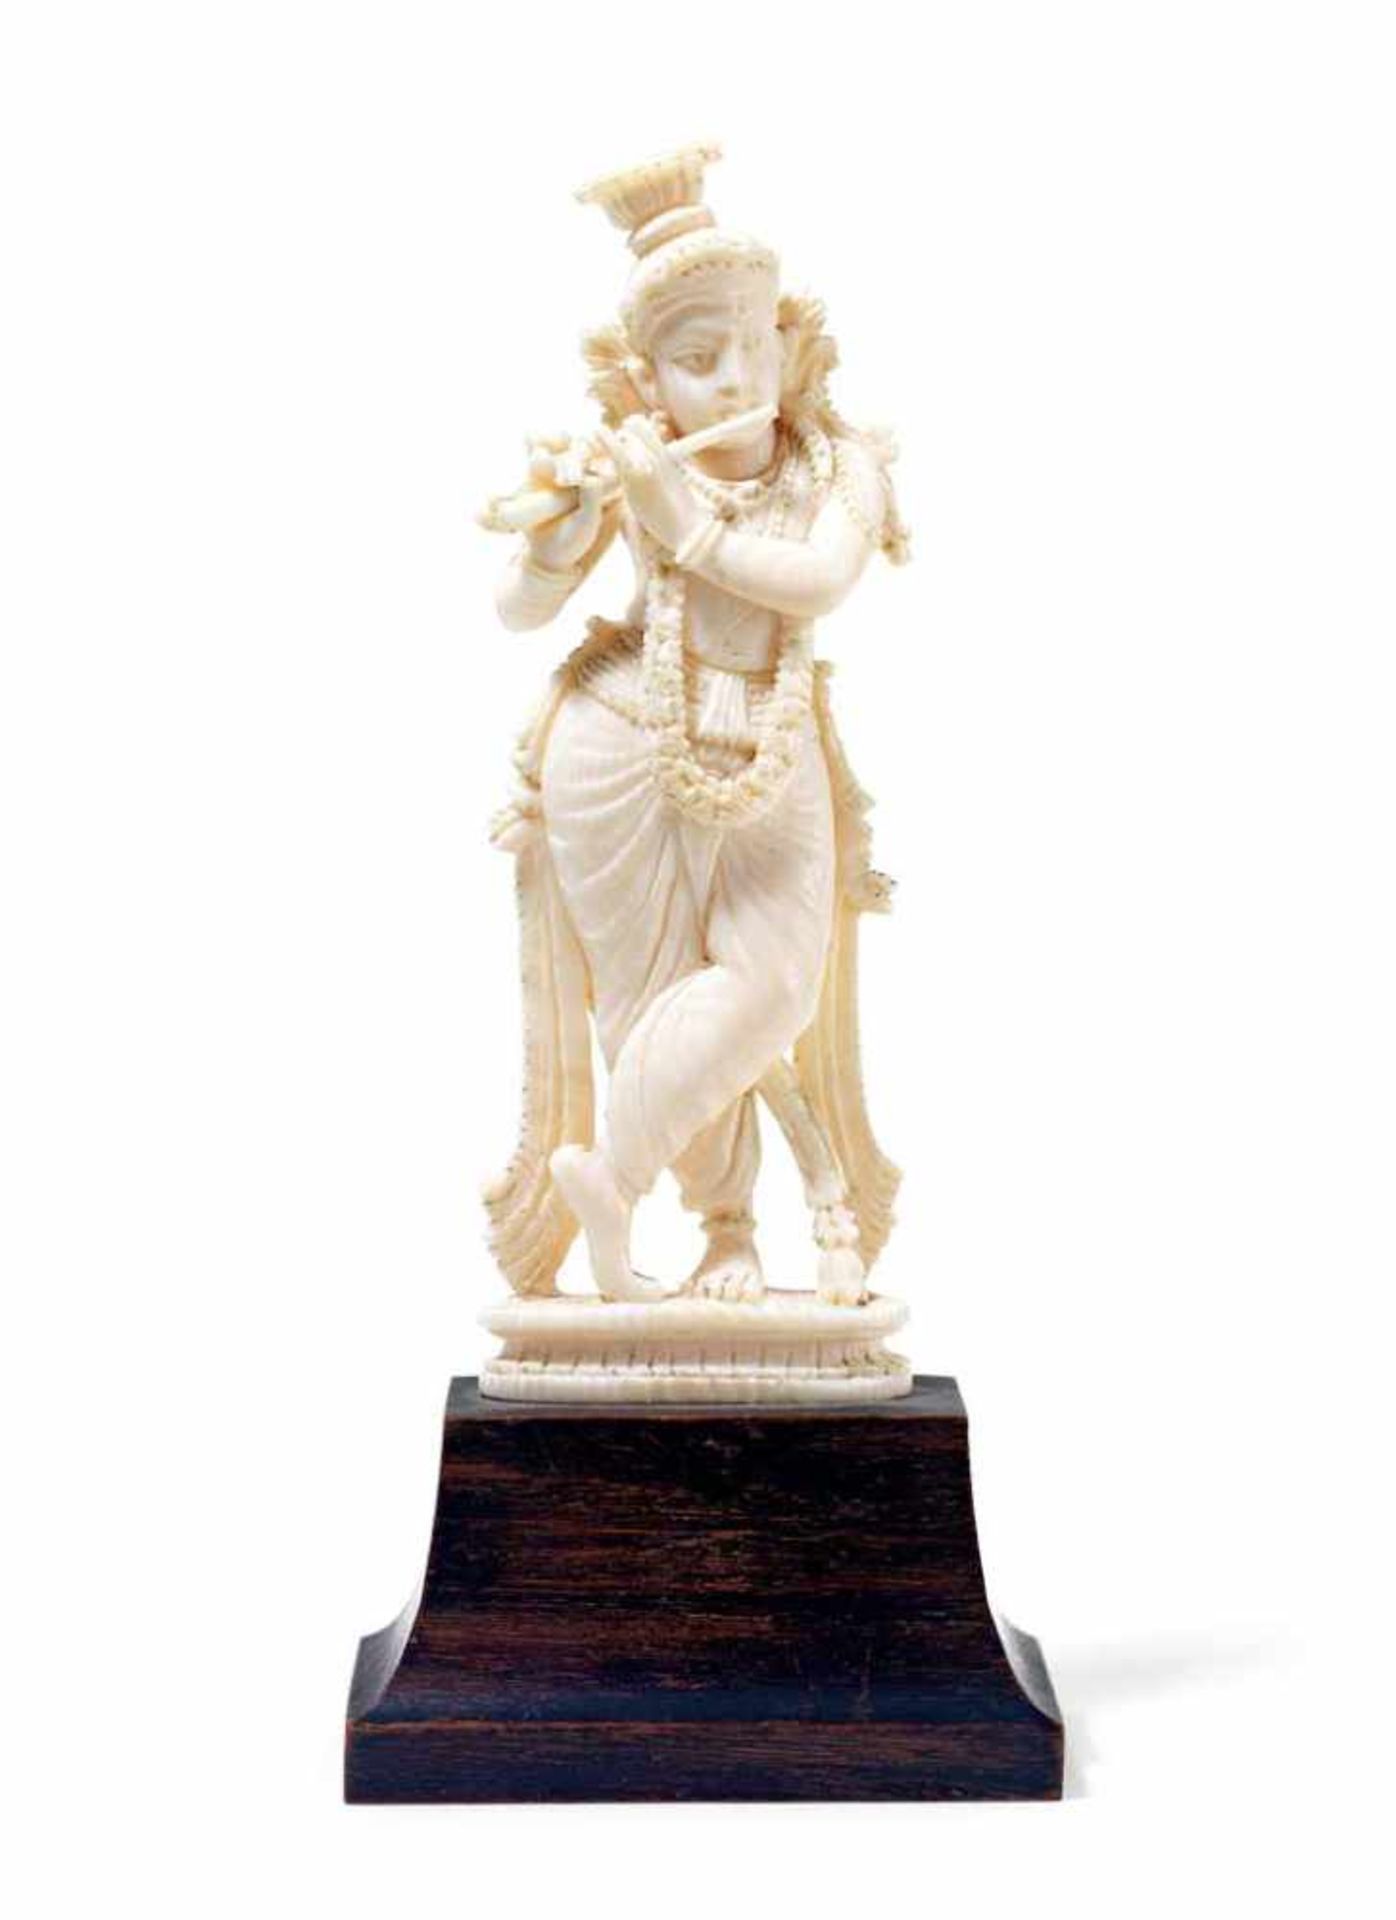 Krishna spielt Flöte. Elfenbein. Indien, Anf. 20. Jh. H 12,5 cm